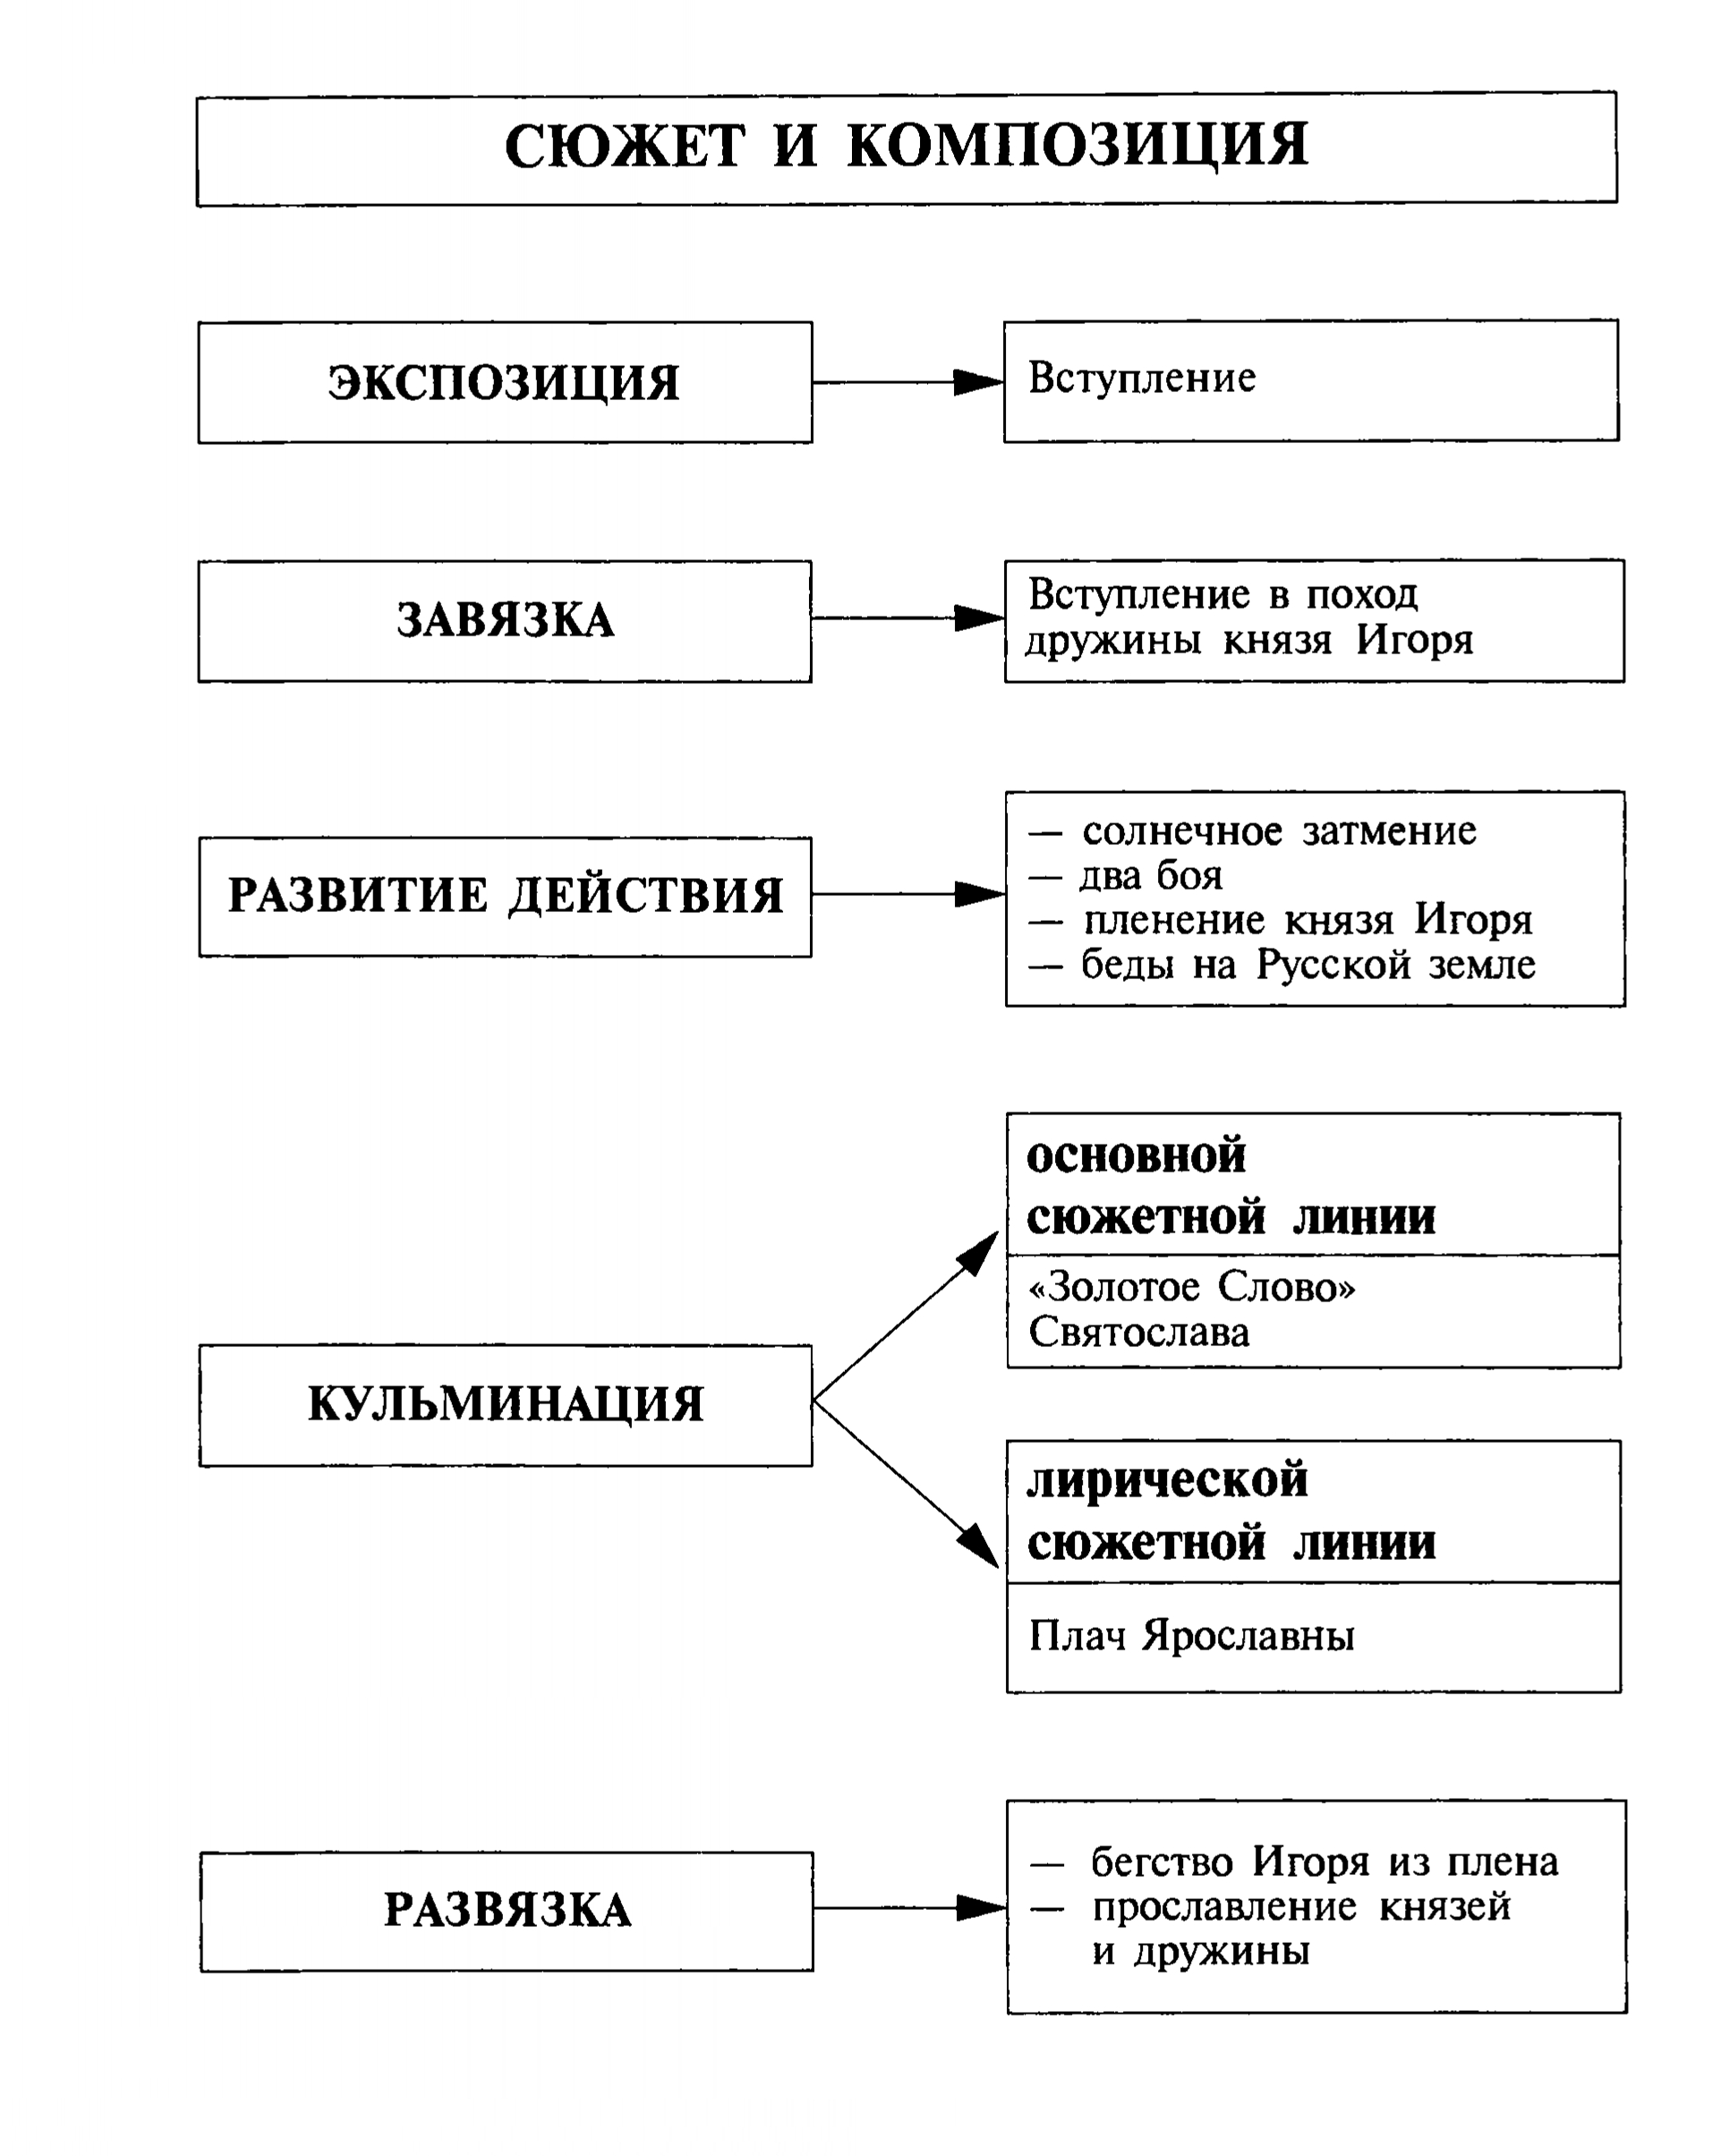 Сюжет и композиция «Слова о полку Игореве» (таблица)